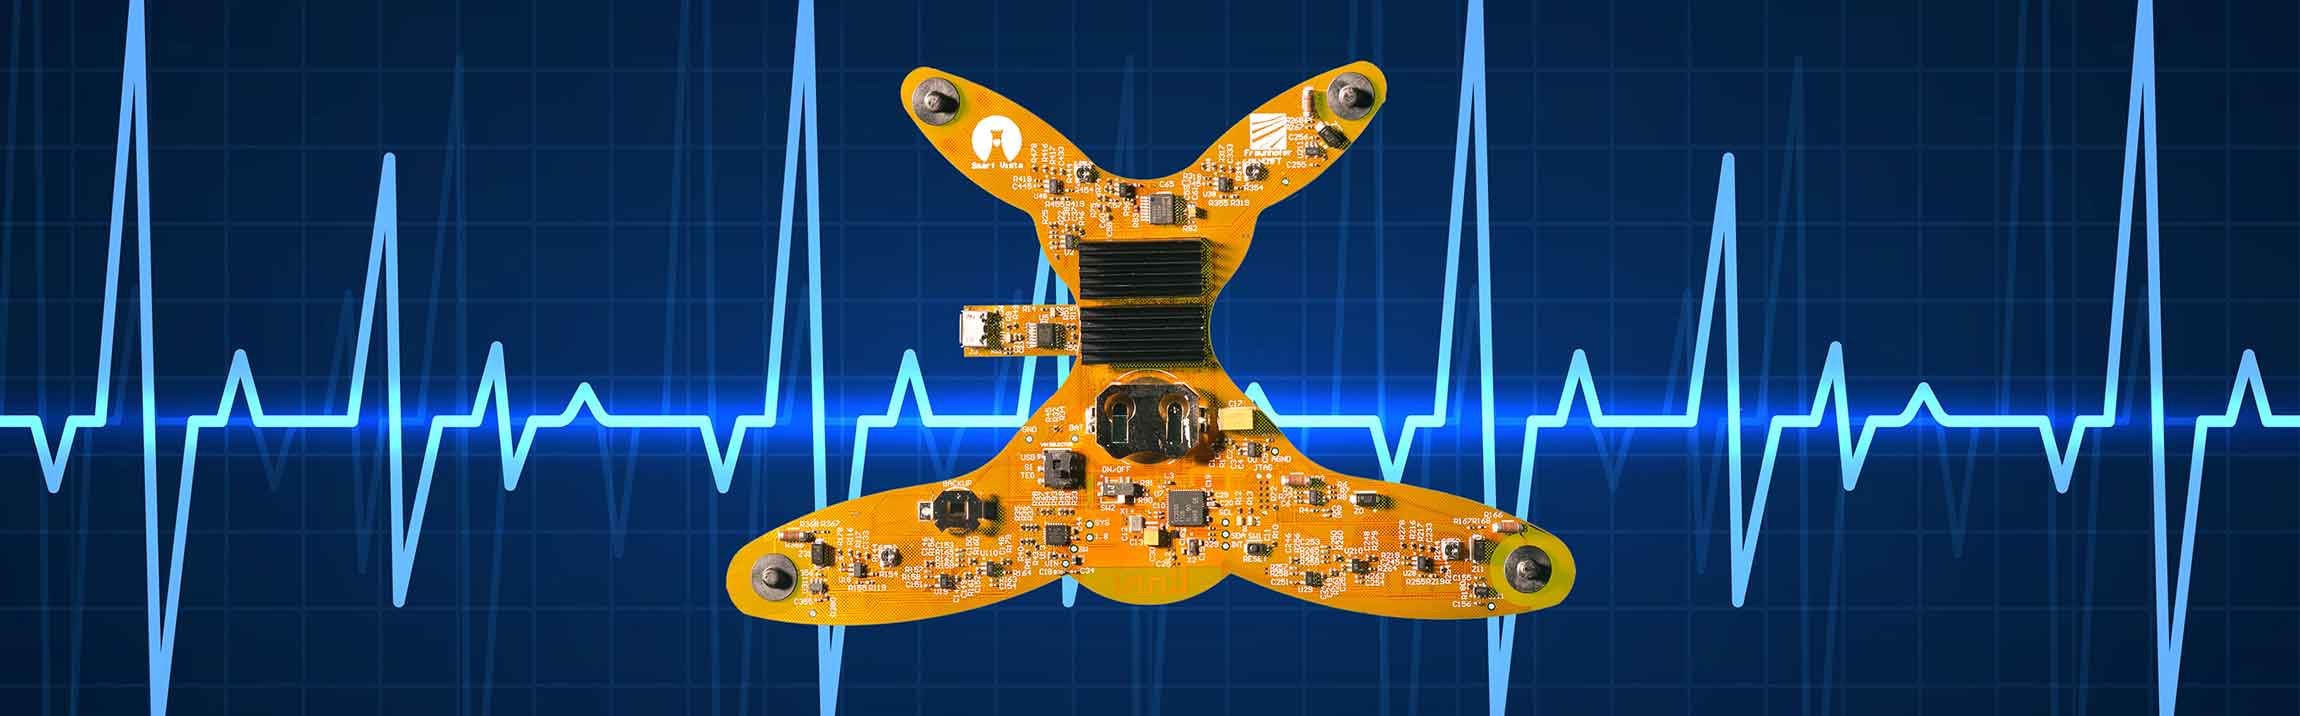 Energy-autonomous Sensor System for Cardiac Monitoring